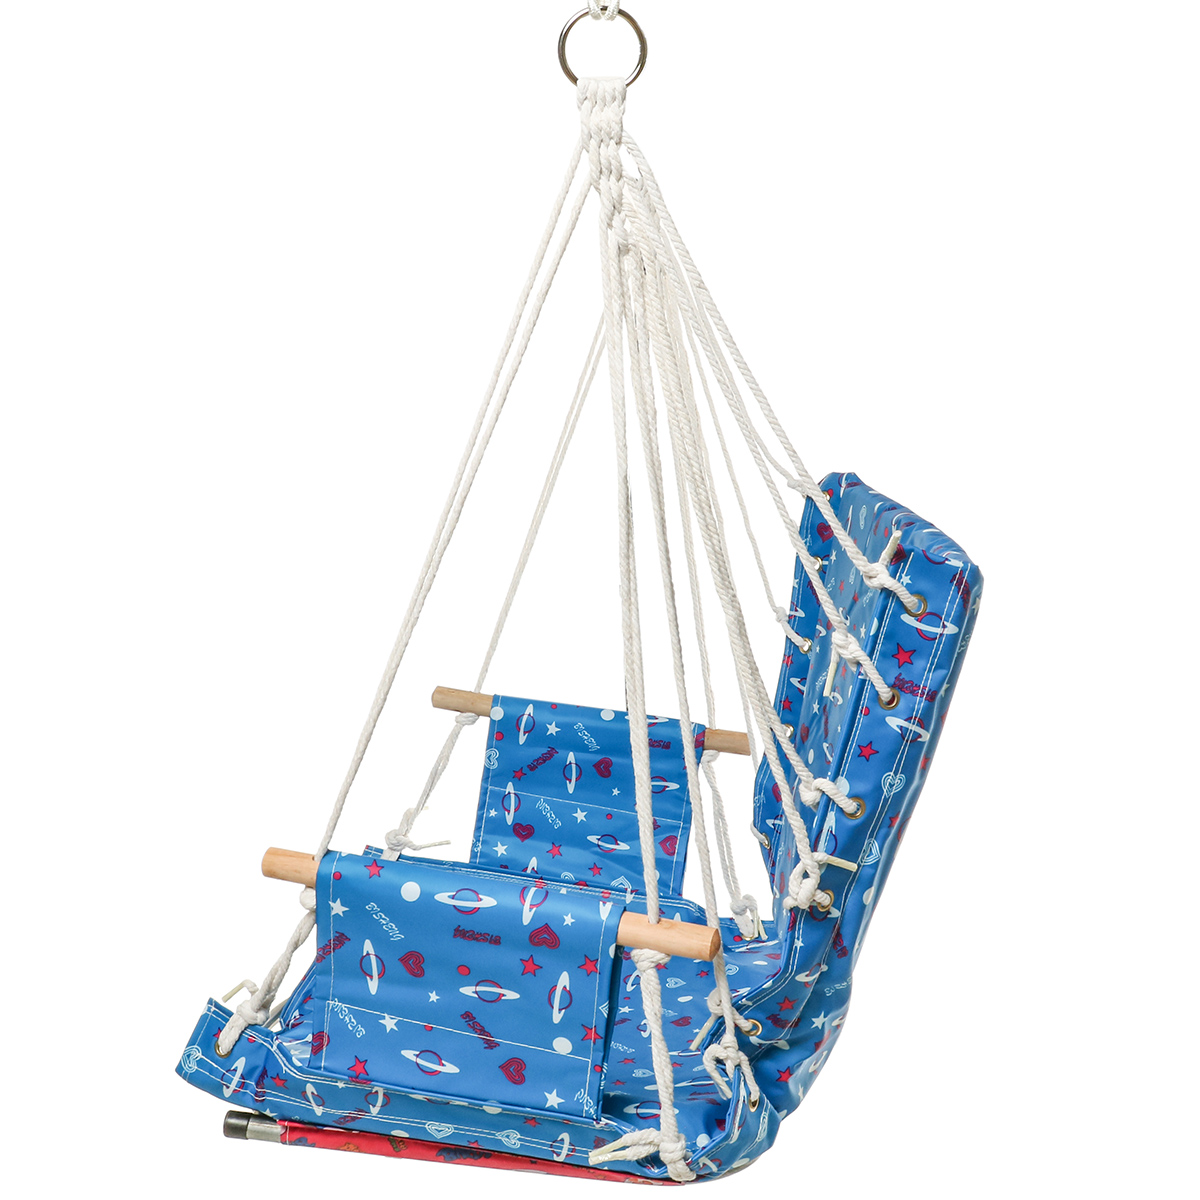 Outdoor-Hanging-Chair-Swinging-Hammock-Thicken-Rope-Swing-Seat-For-Home-Indoor-Outdoor-Backyard-Gard-1706887-11